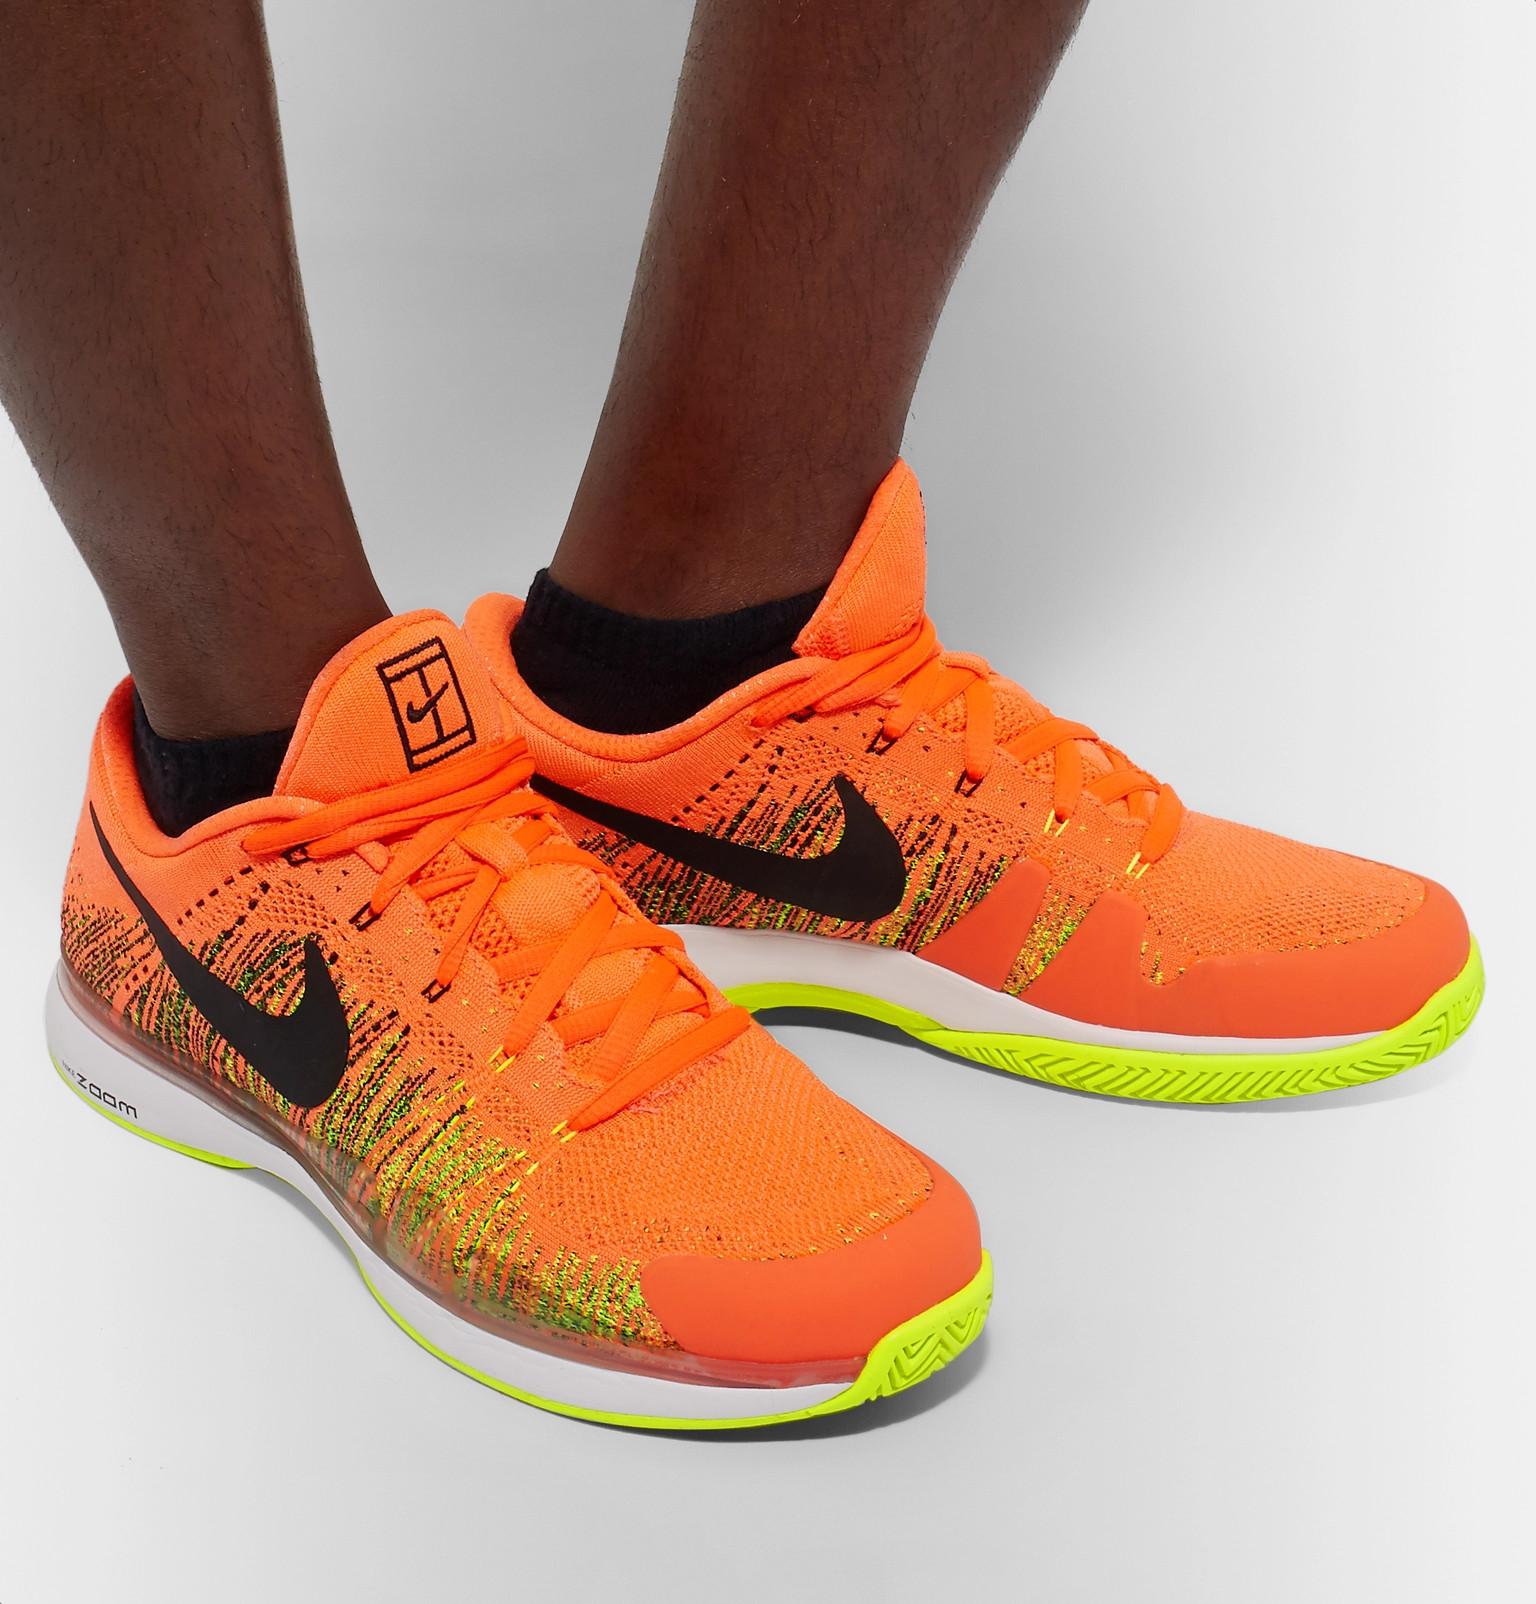 Nike Rubber Zoom Vapor Flyknit Tennis Sneakers in Bright Orange (Orange